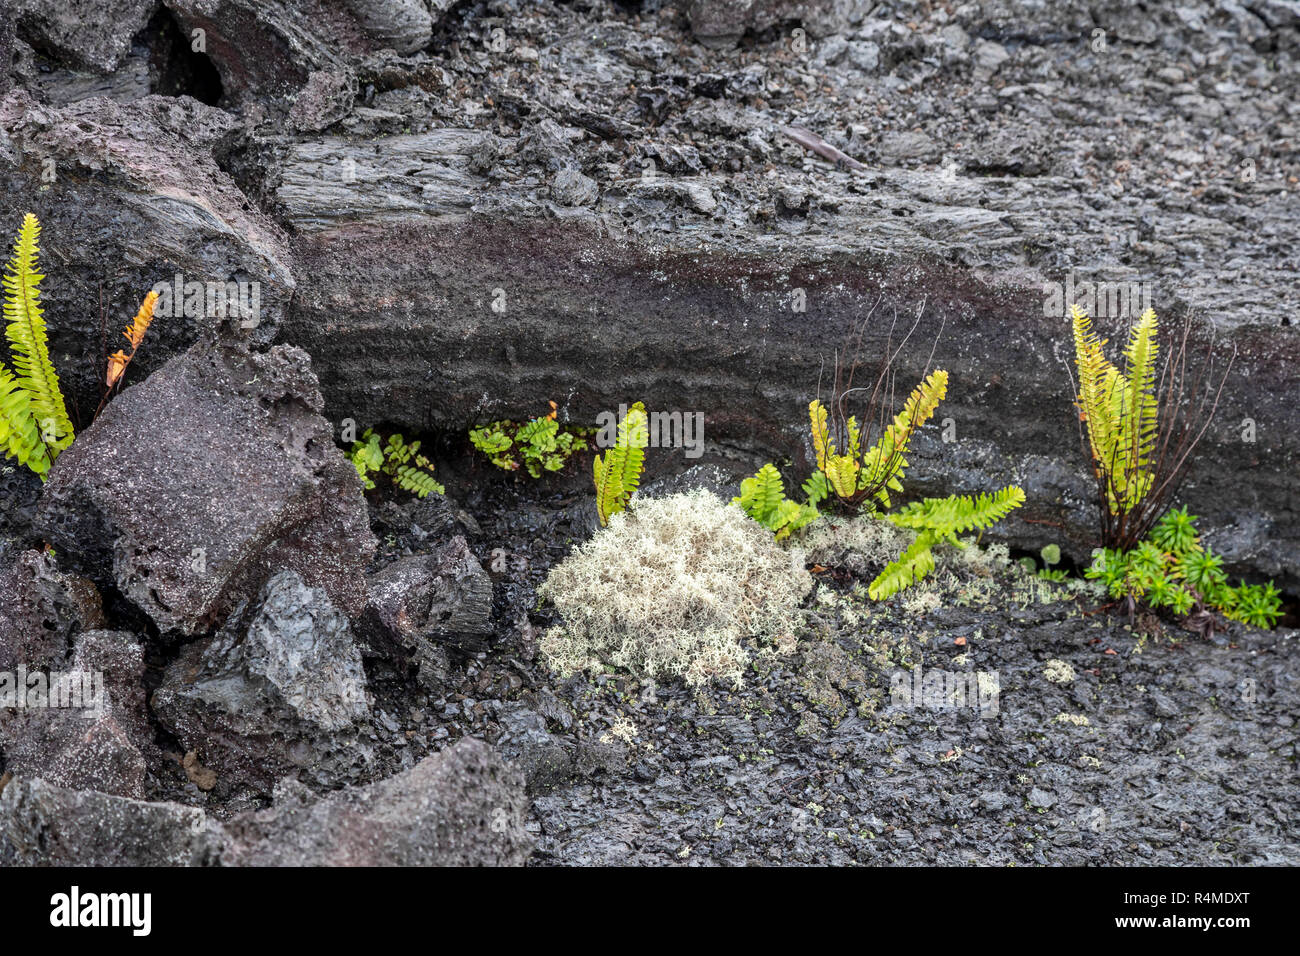 Hawaii Volcanoes National Park, New York - Les plantes croissant sur une ancienne coulée du volcan Kilauea. Banque D'Images